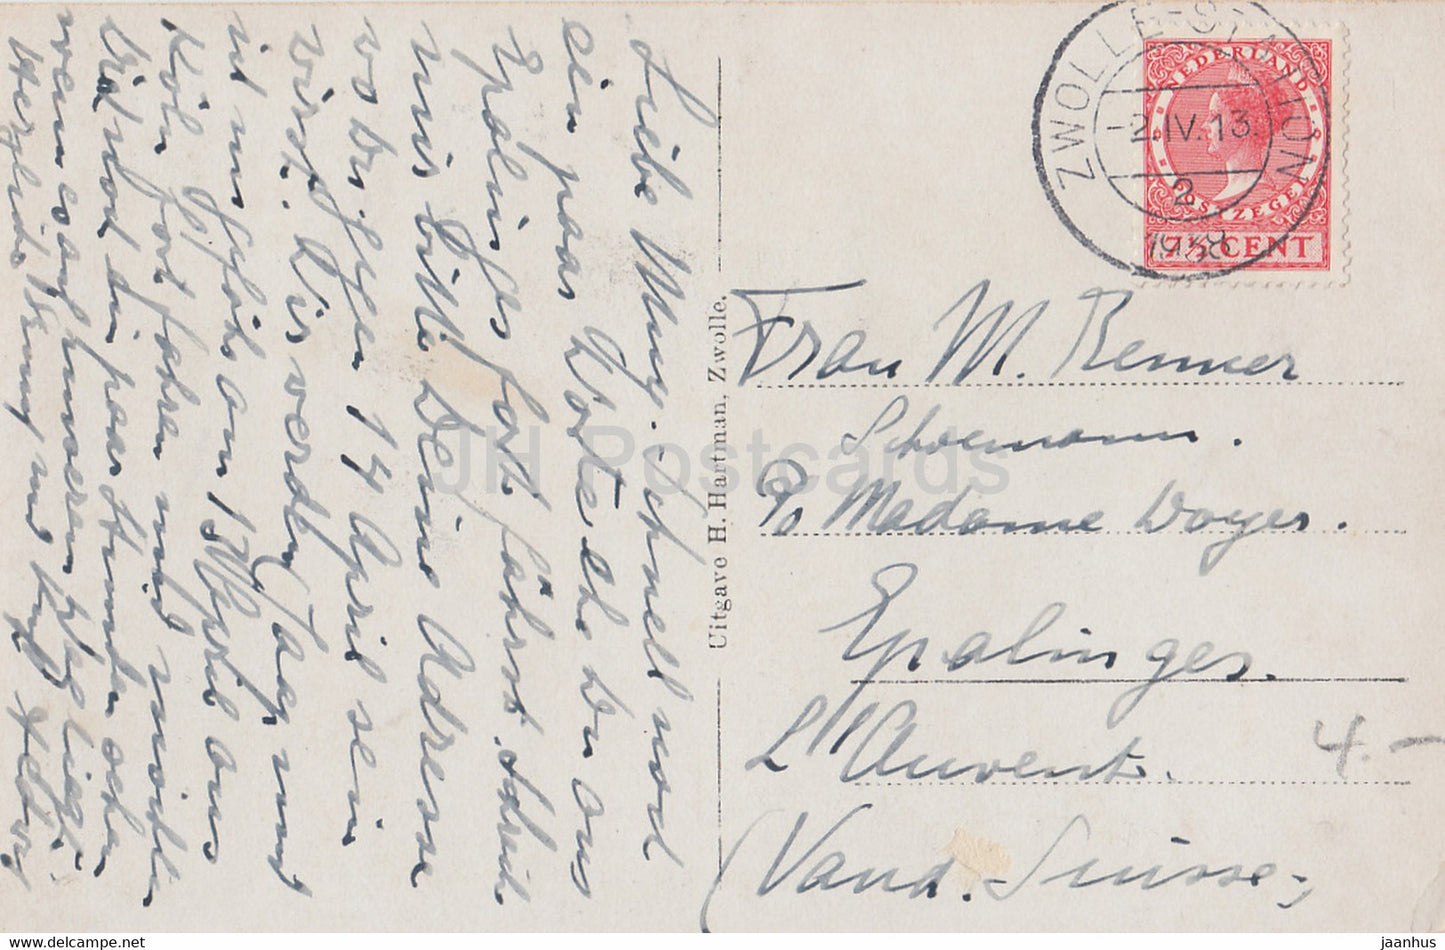 Zwolle - Sassenpoortenbrug - pont - carte postale ancienne - 1913 - Pays-Bas - utilisé